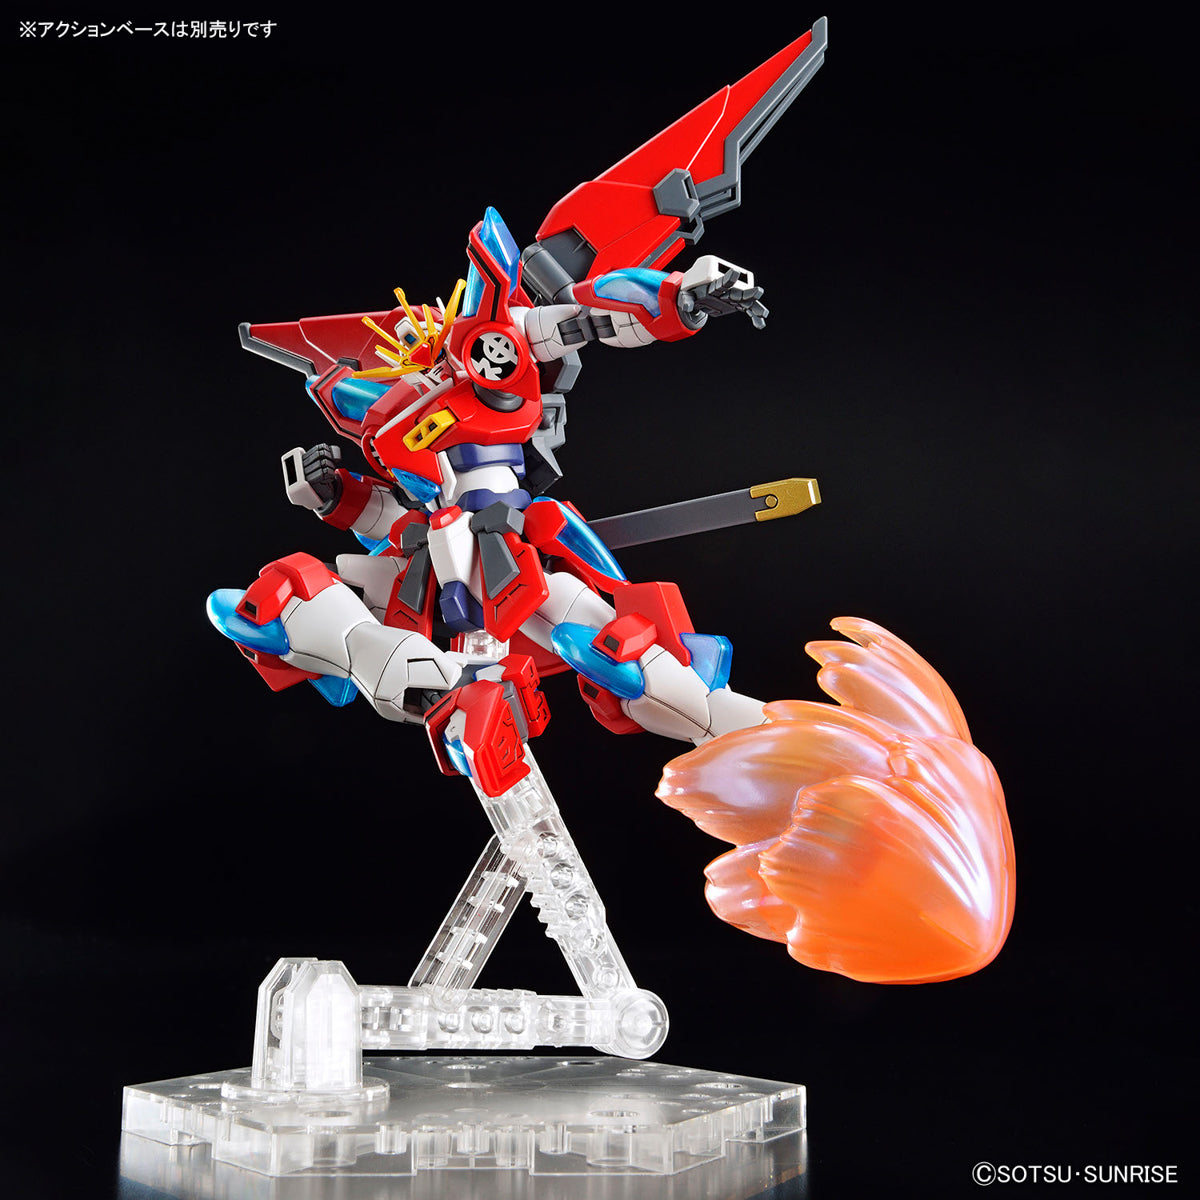 Bandai 2654116 1:144 HG Gundam Build Metaverse Shin Burning Gundam Model Kit